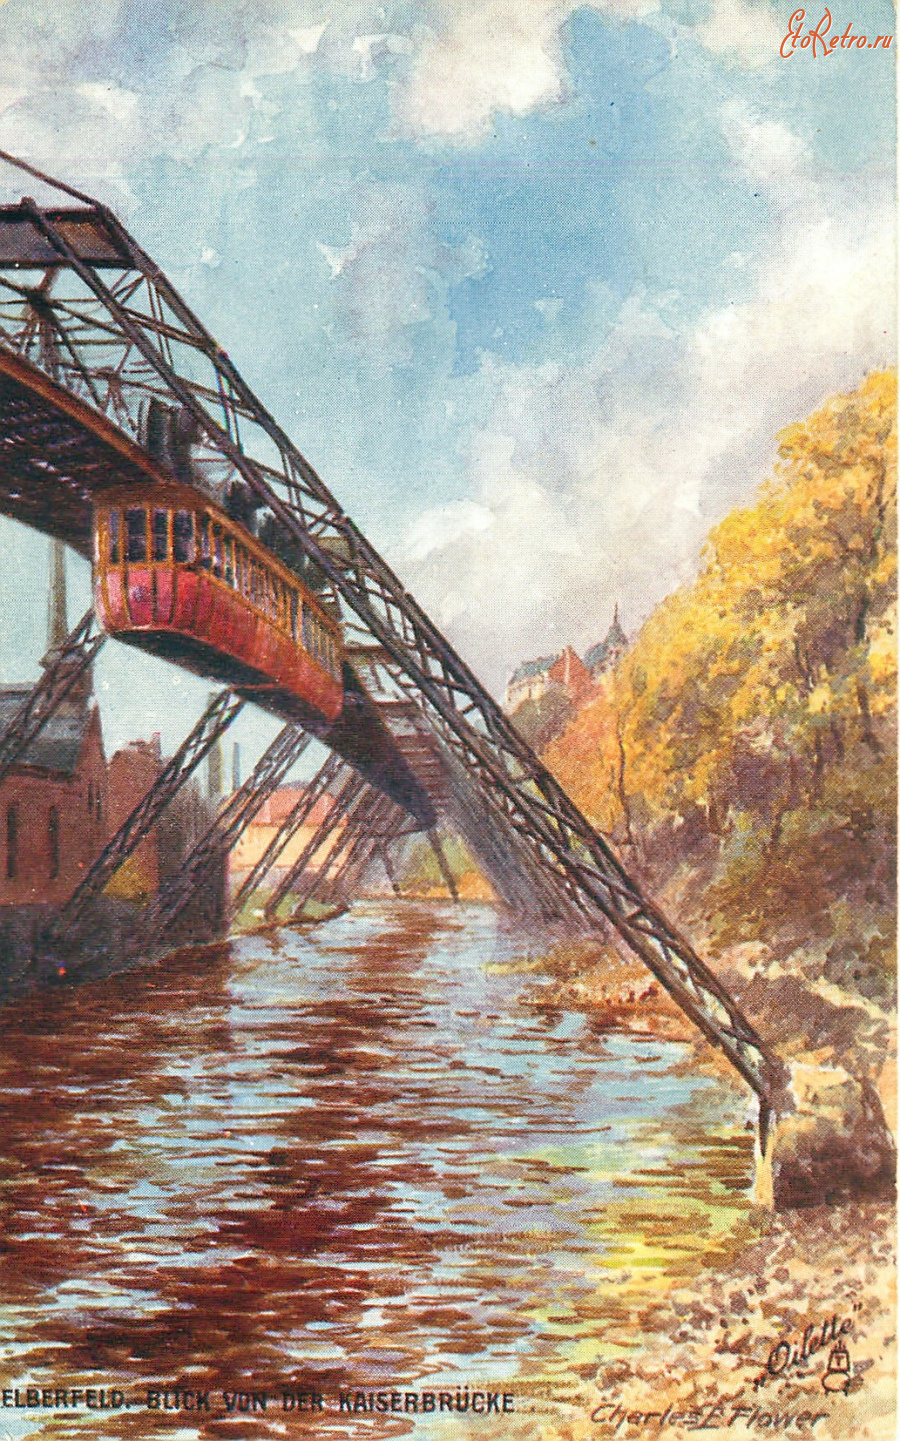 Железная дорога (поезда, паровозы, локомотивы, вагоны) - Мост Кайзербрюкке подвесной железной дороги Эльберфельд